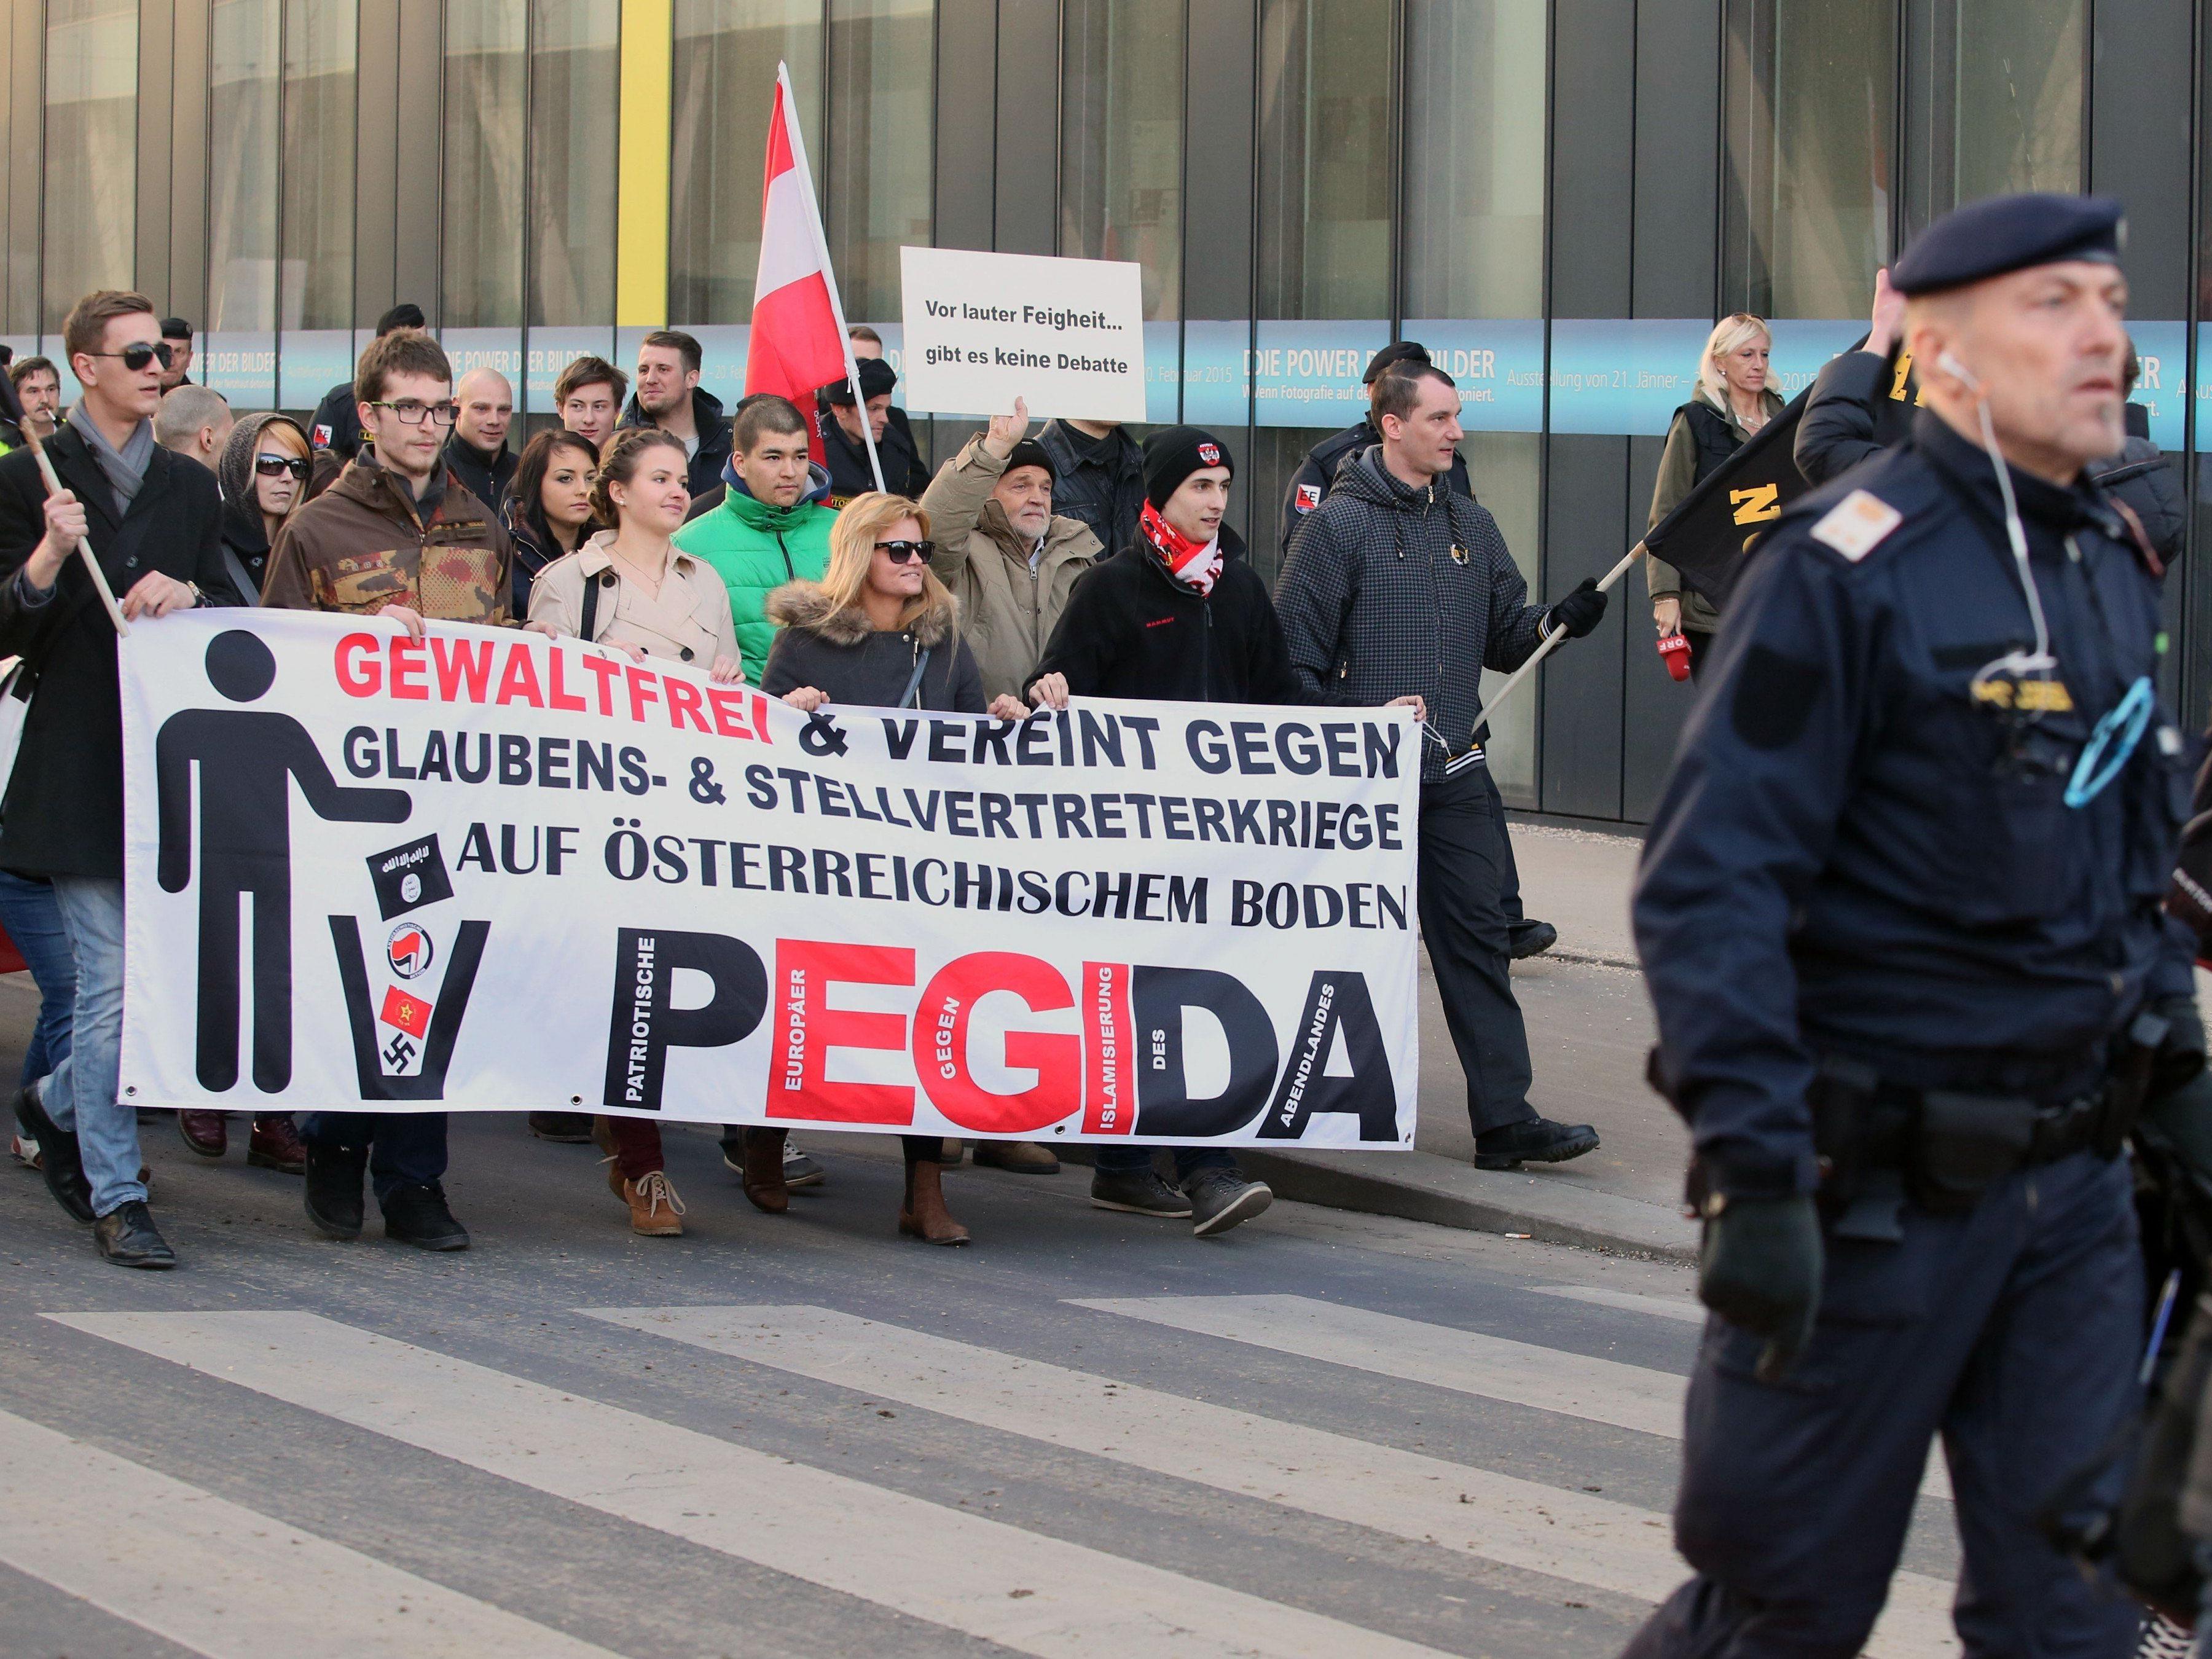 Eine Kundgebung von Pegida-Anhängern am Samstag, 21. Februar 2015 in Linz.